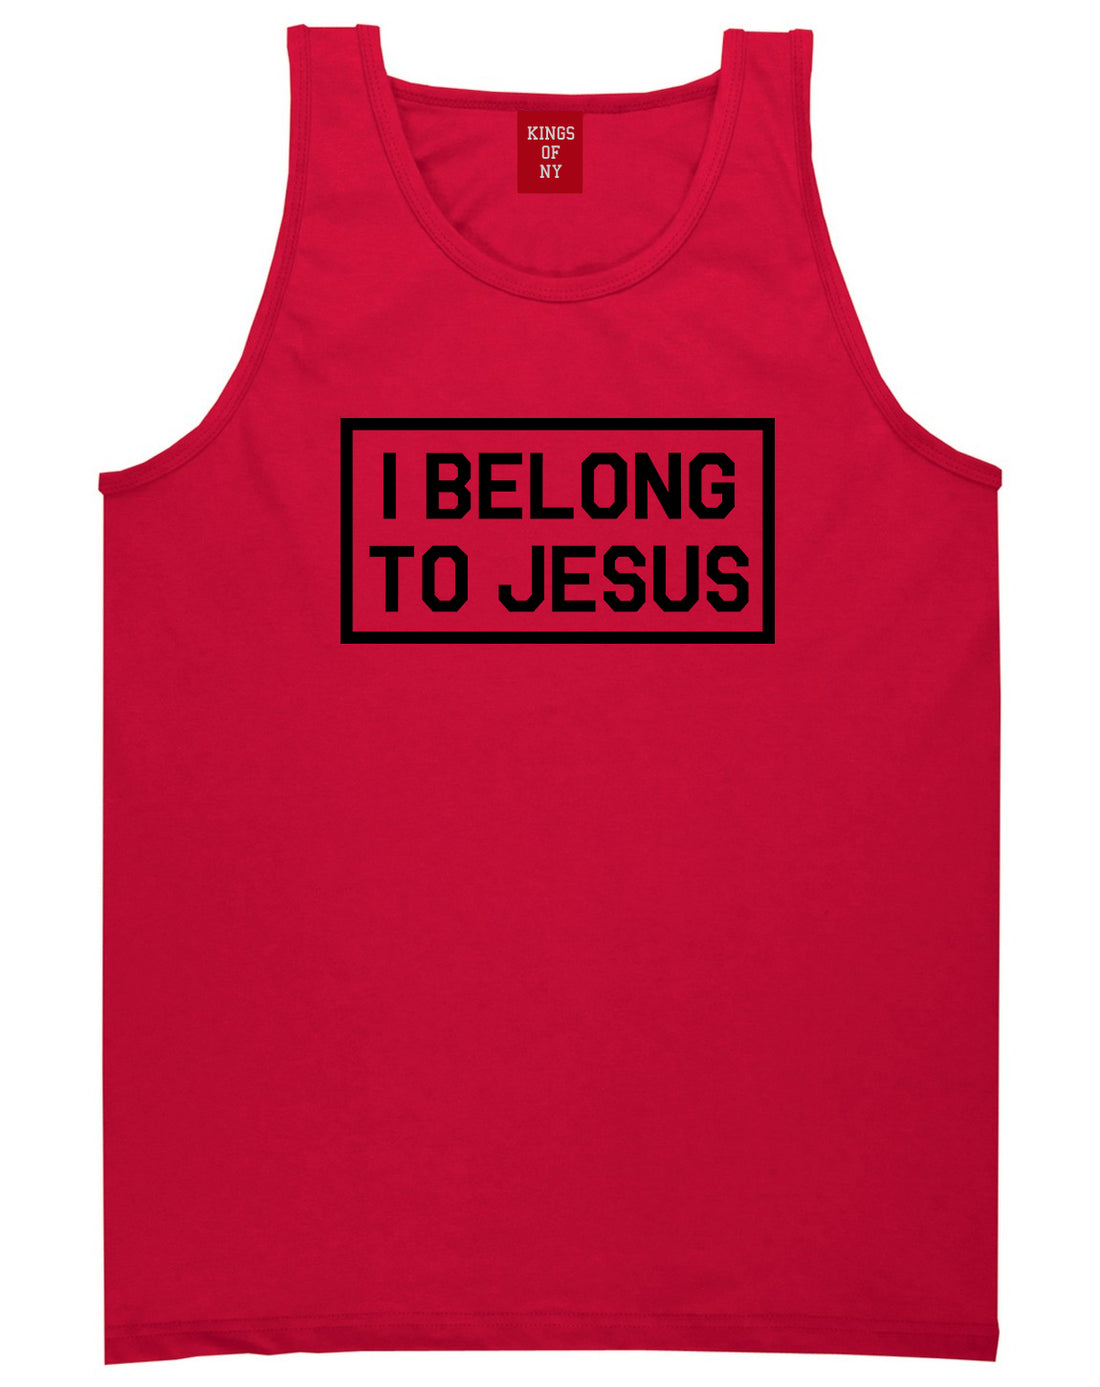 I Belong To Jesus Mens Tank Top Shirt Red